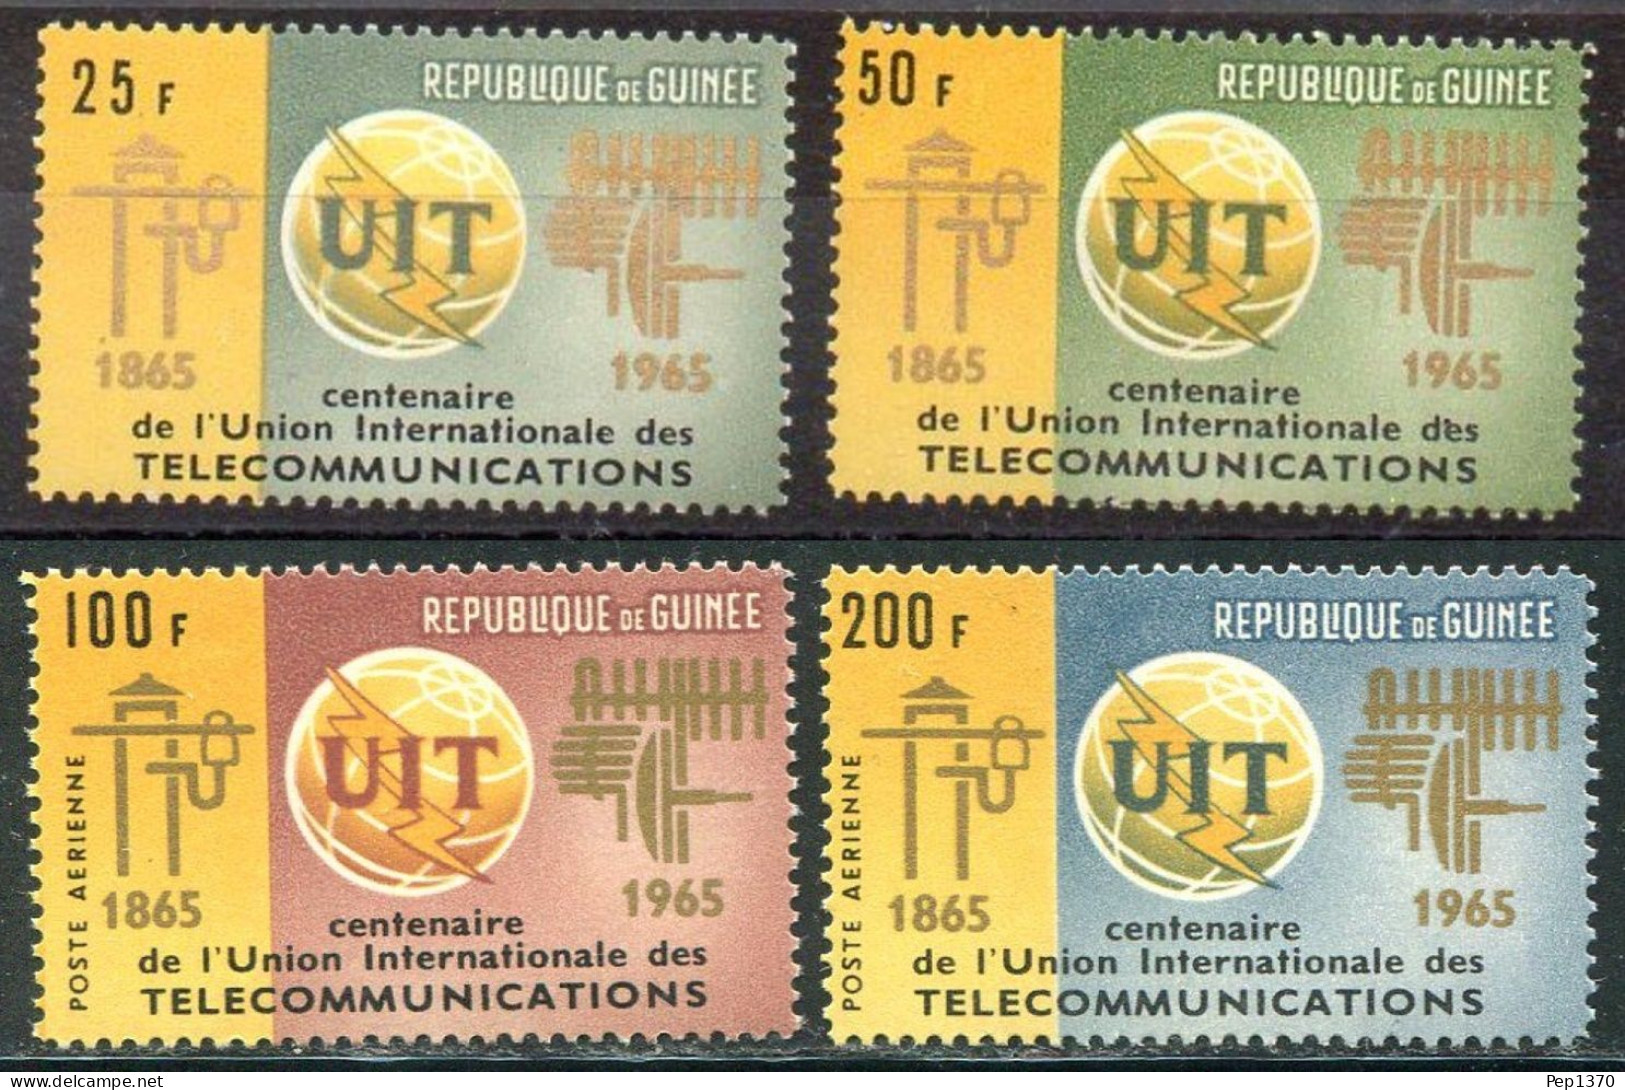 GUINEA 1965 - REPUBLIQUE DE GUINÉE -UIT - UNION INTERNACIONAL DE TELECOMUNICACIONES - YVERT 242/243**+ AEREOS 54/55** - Guinée (1958-...)